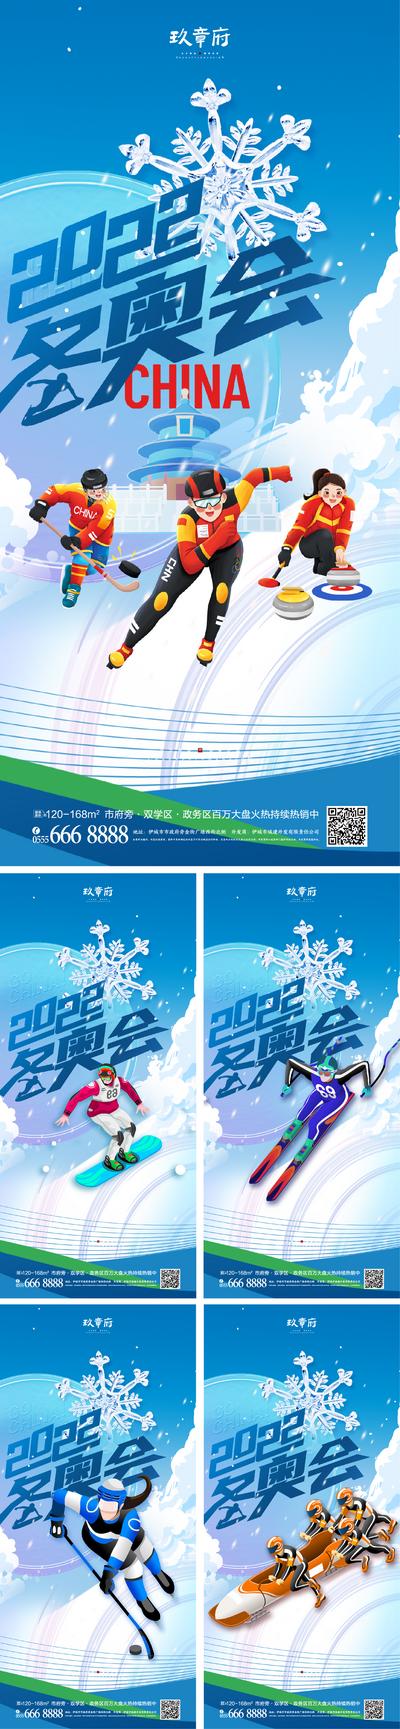 南门网 广告 海报 比赛 冬奥会 运动 滑雪 系列